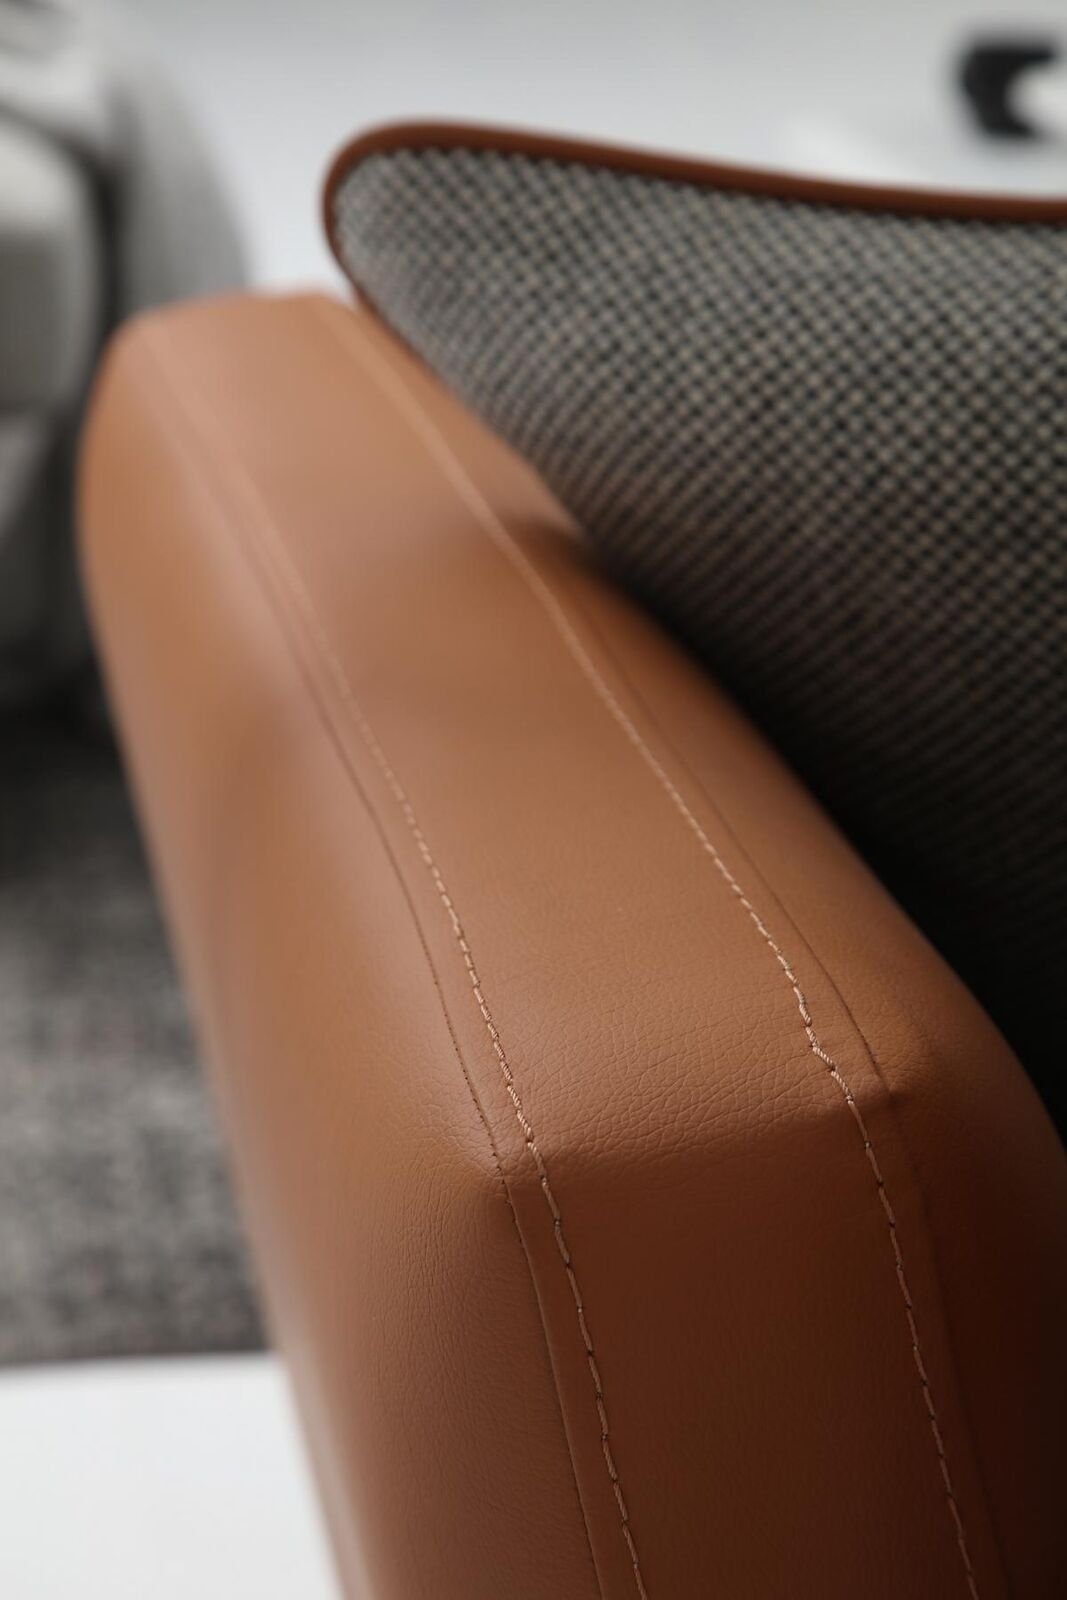 JVmoebel 3-Sitzer Dreisitzer Teile, Design 1 Grau, Sitzer Wohnzimmer Sofa Made Europa Orange Modern 3 Stoff in